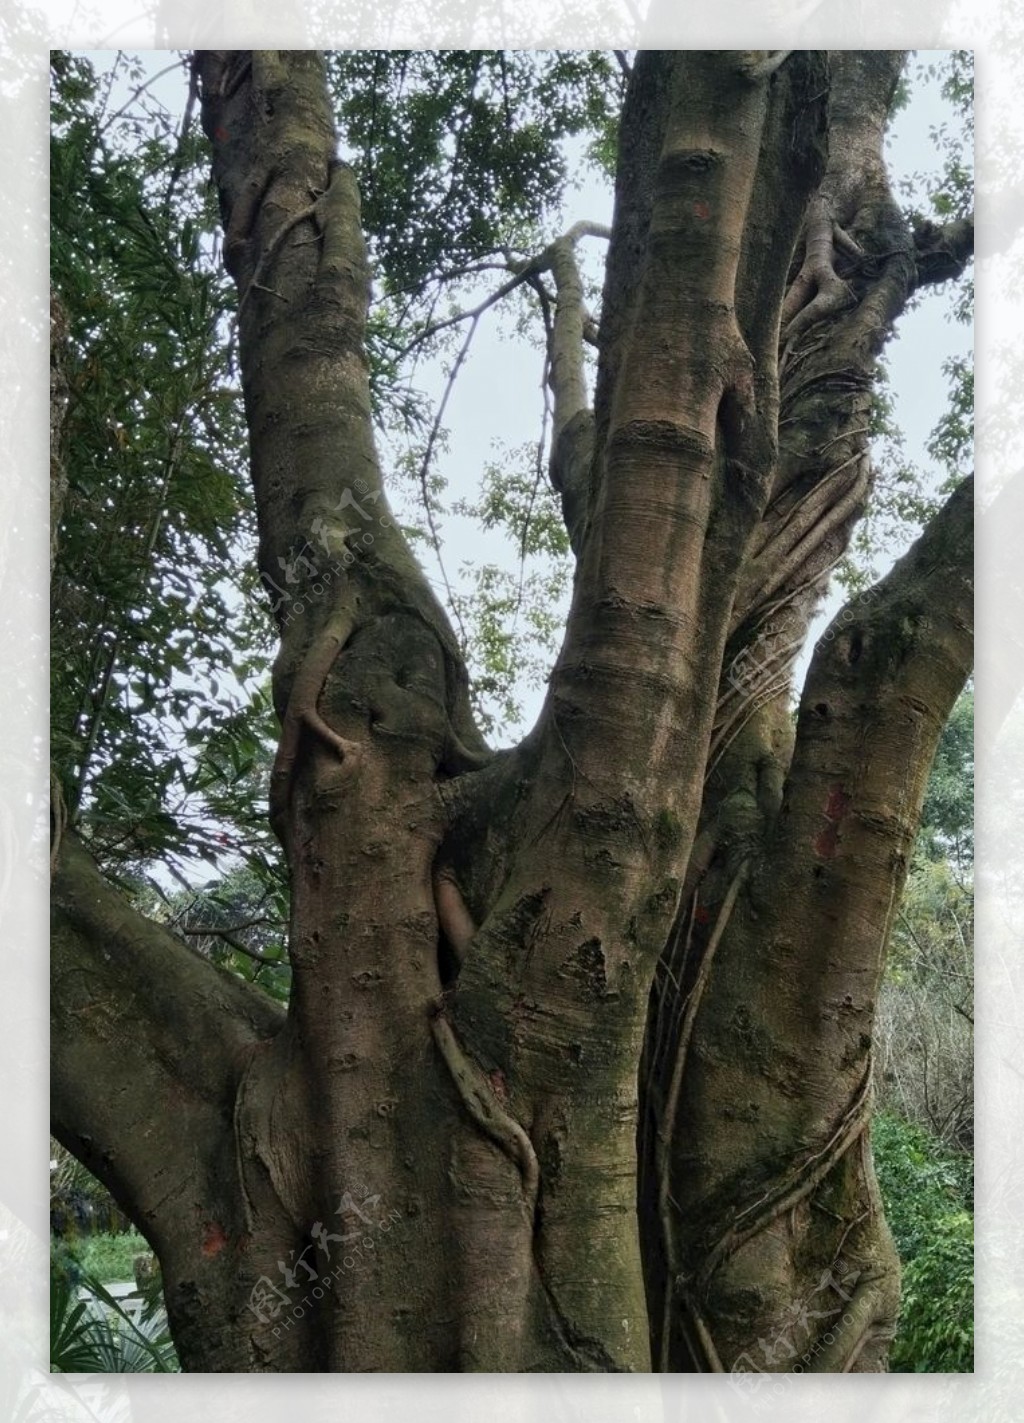 千年古树枝桠树干纹理